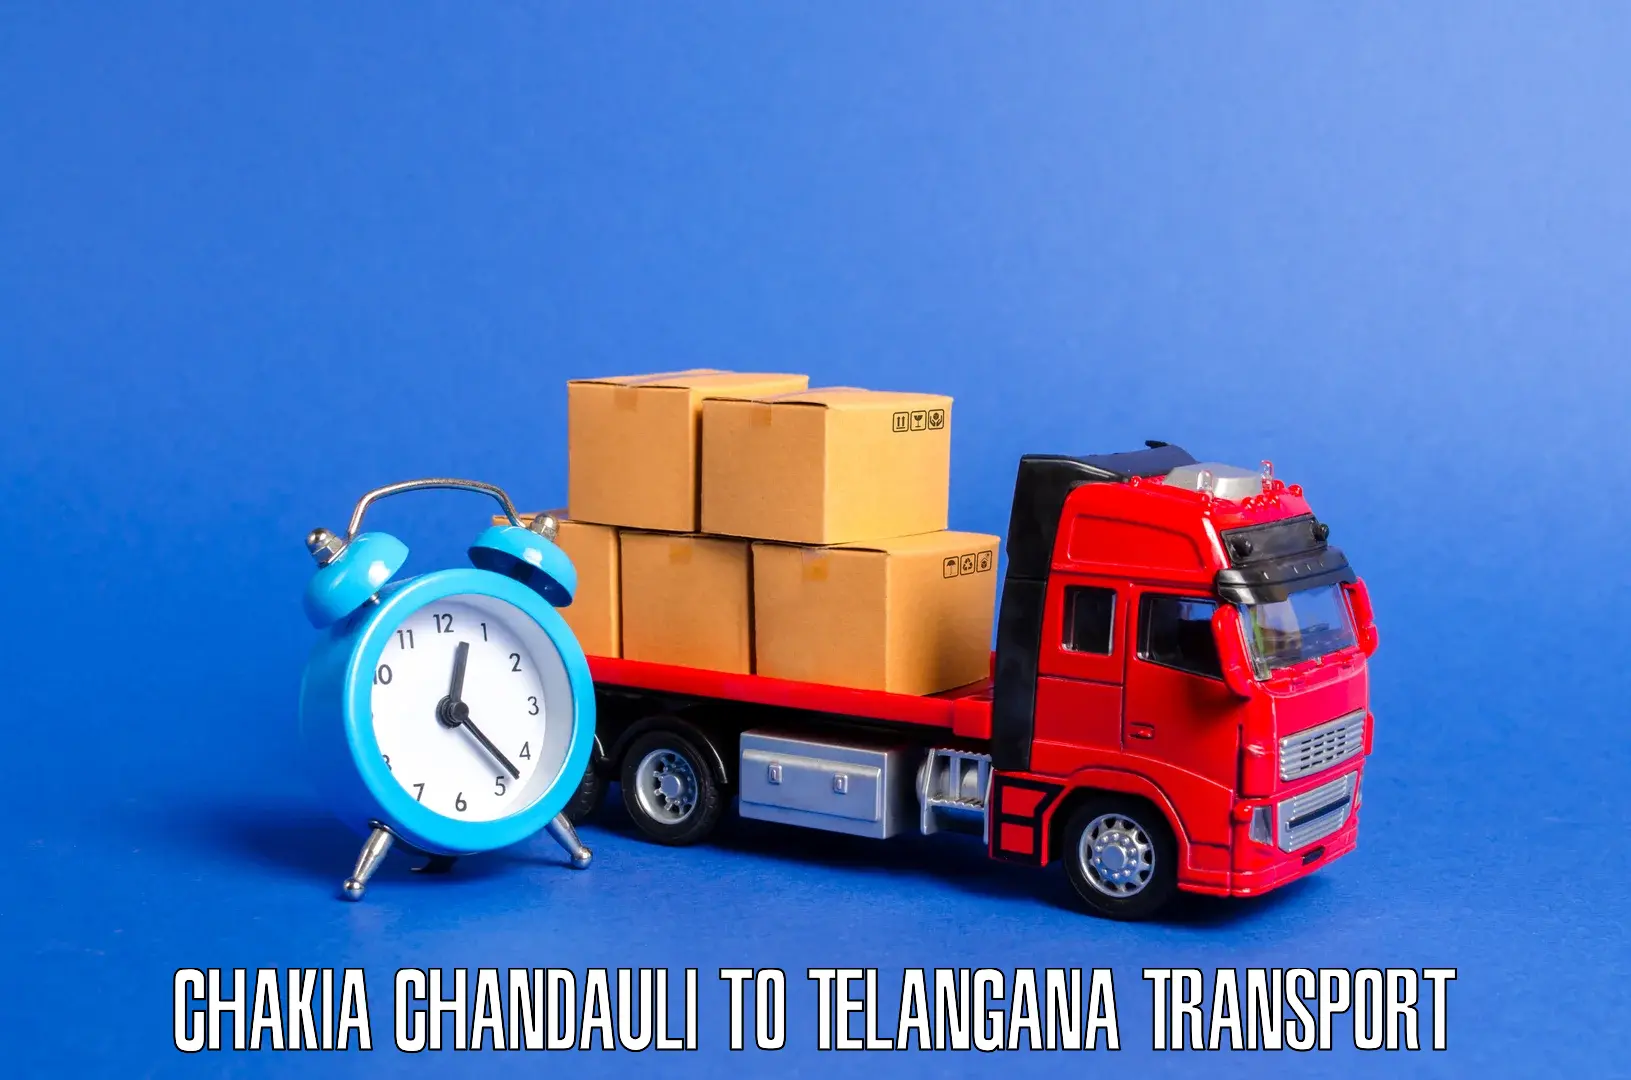 Furniture transport service Chakia Chandauli to Bhupalpally